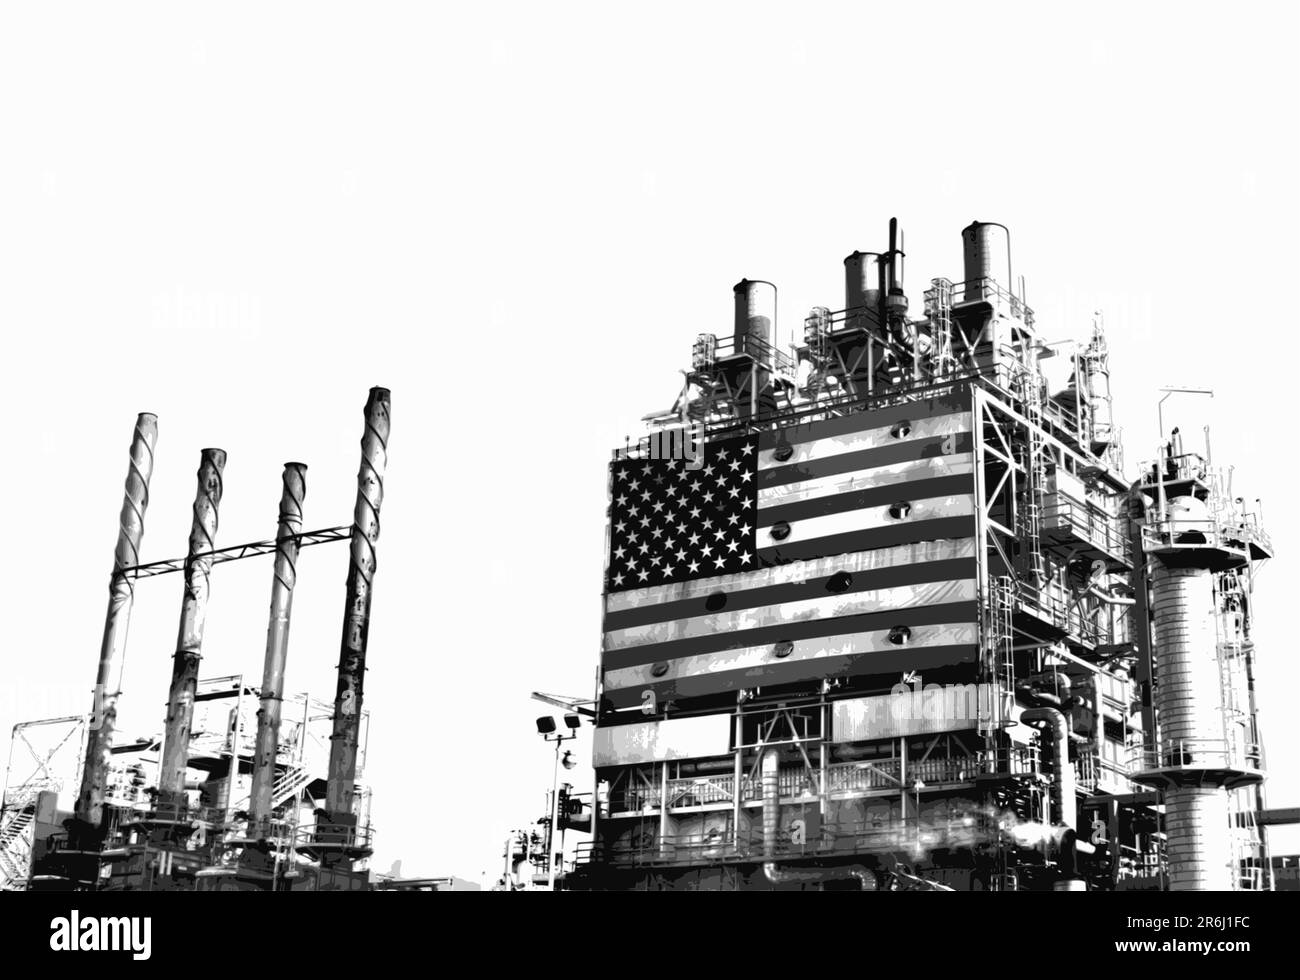 Partie du complexe de raffinerie de pétrole avec un grand drapeau américain. Émanations de la cheminée. Illustration de Vecteur